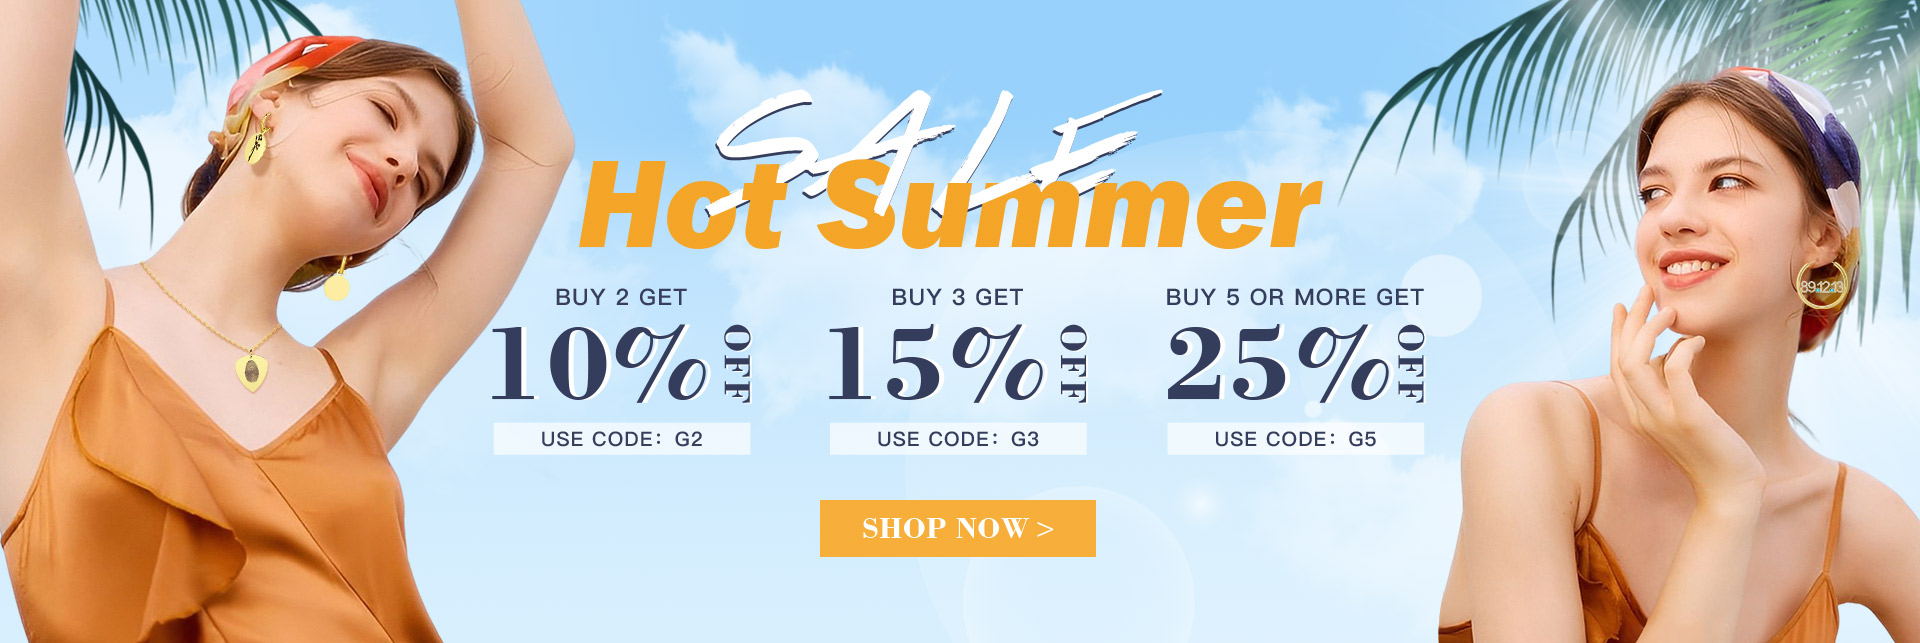 Hot Summer Sale